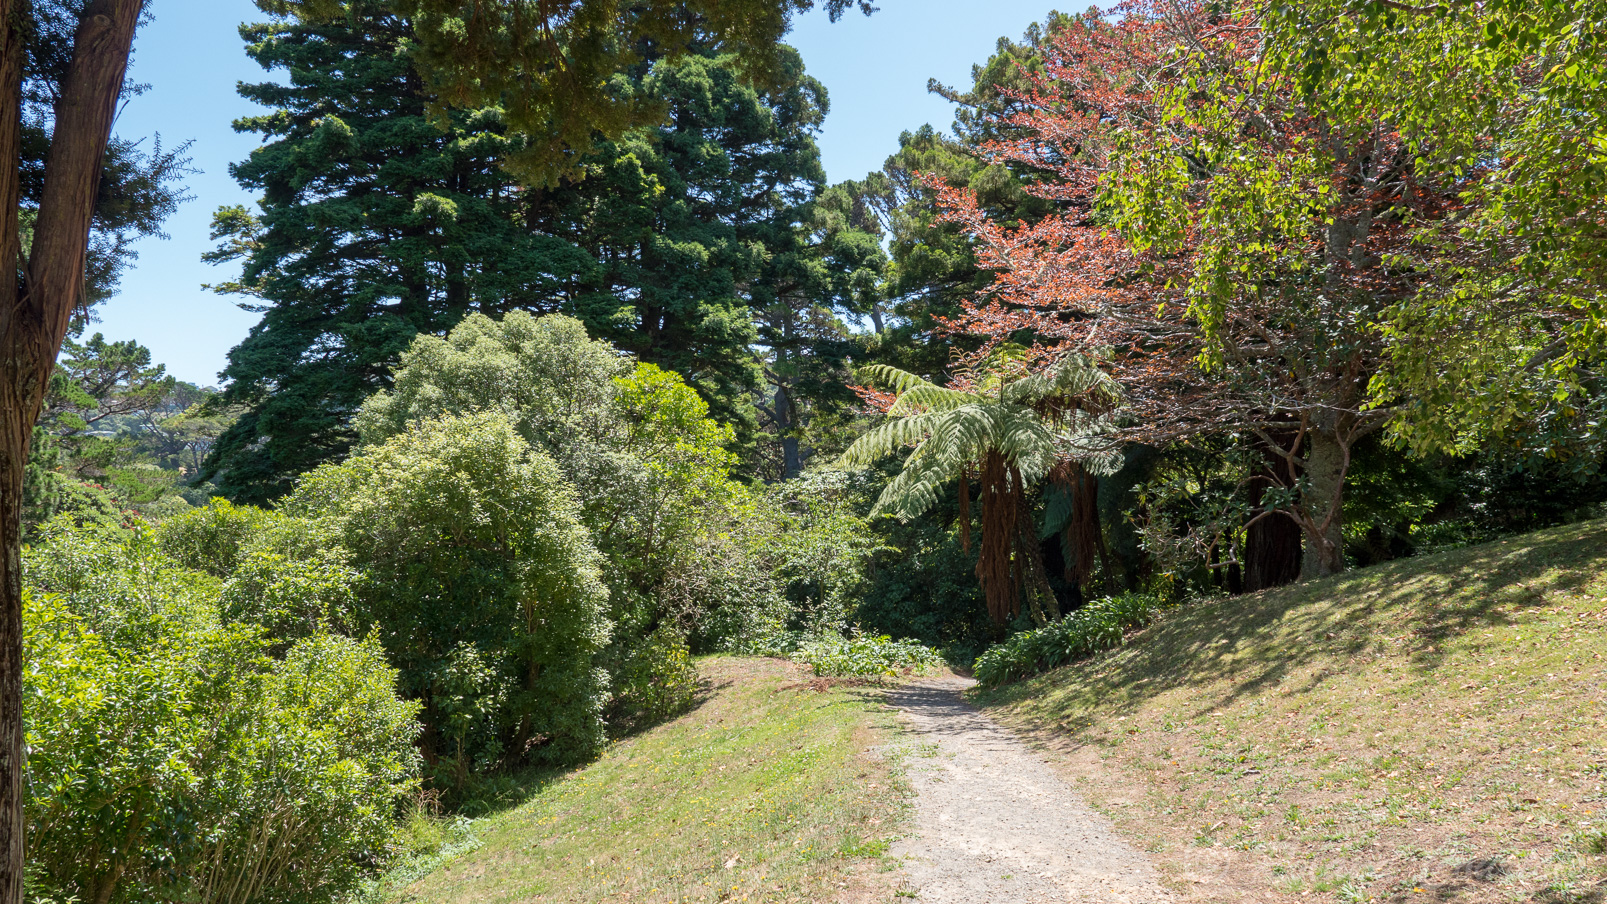 Le jardin botanique de Wellington offre plus de 26 hectares de vues imprenables, avec des paysages uniques, des forêts exotiques, du bush, des parterres de fleurs multicolores et de magnifiques jardins spécialisés, comme la Maison aux Bégonias